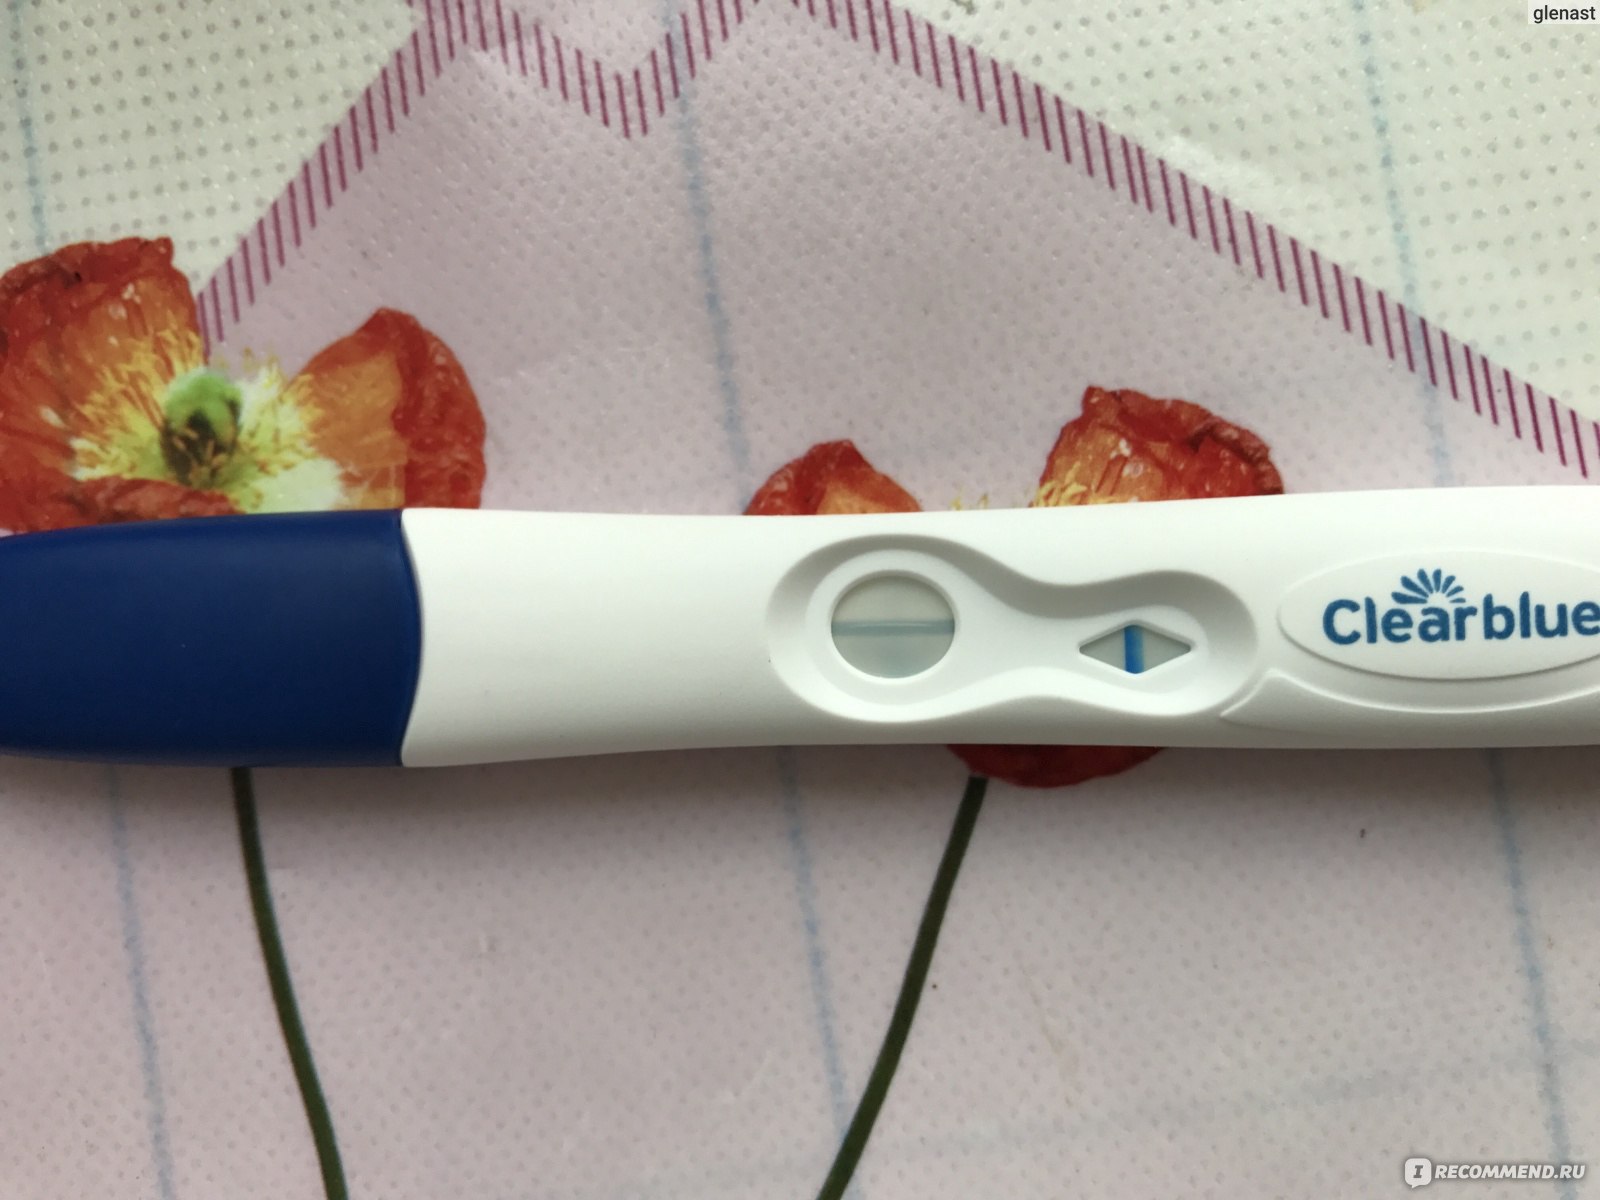 Clearblue Plus Тест на беременность отзывы